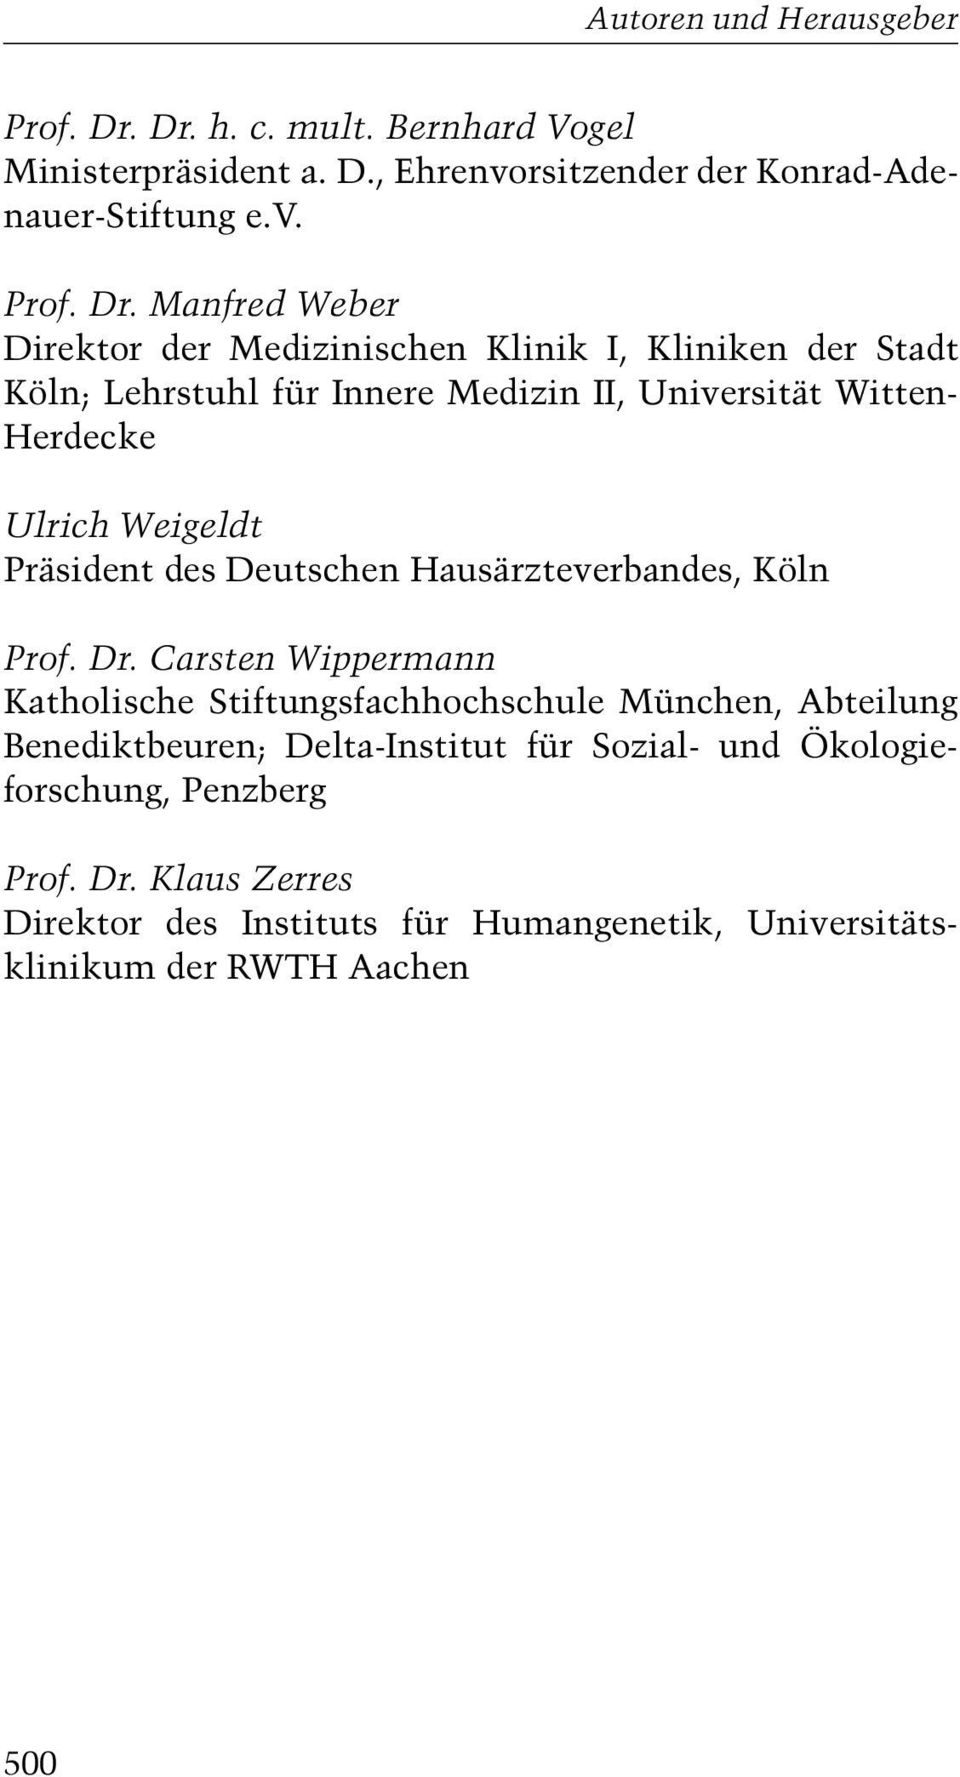 rsitzender der Konrad-Adenauer-Stiftung e.v.